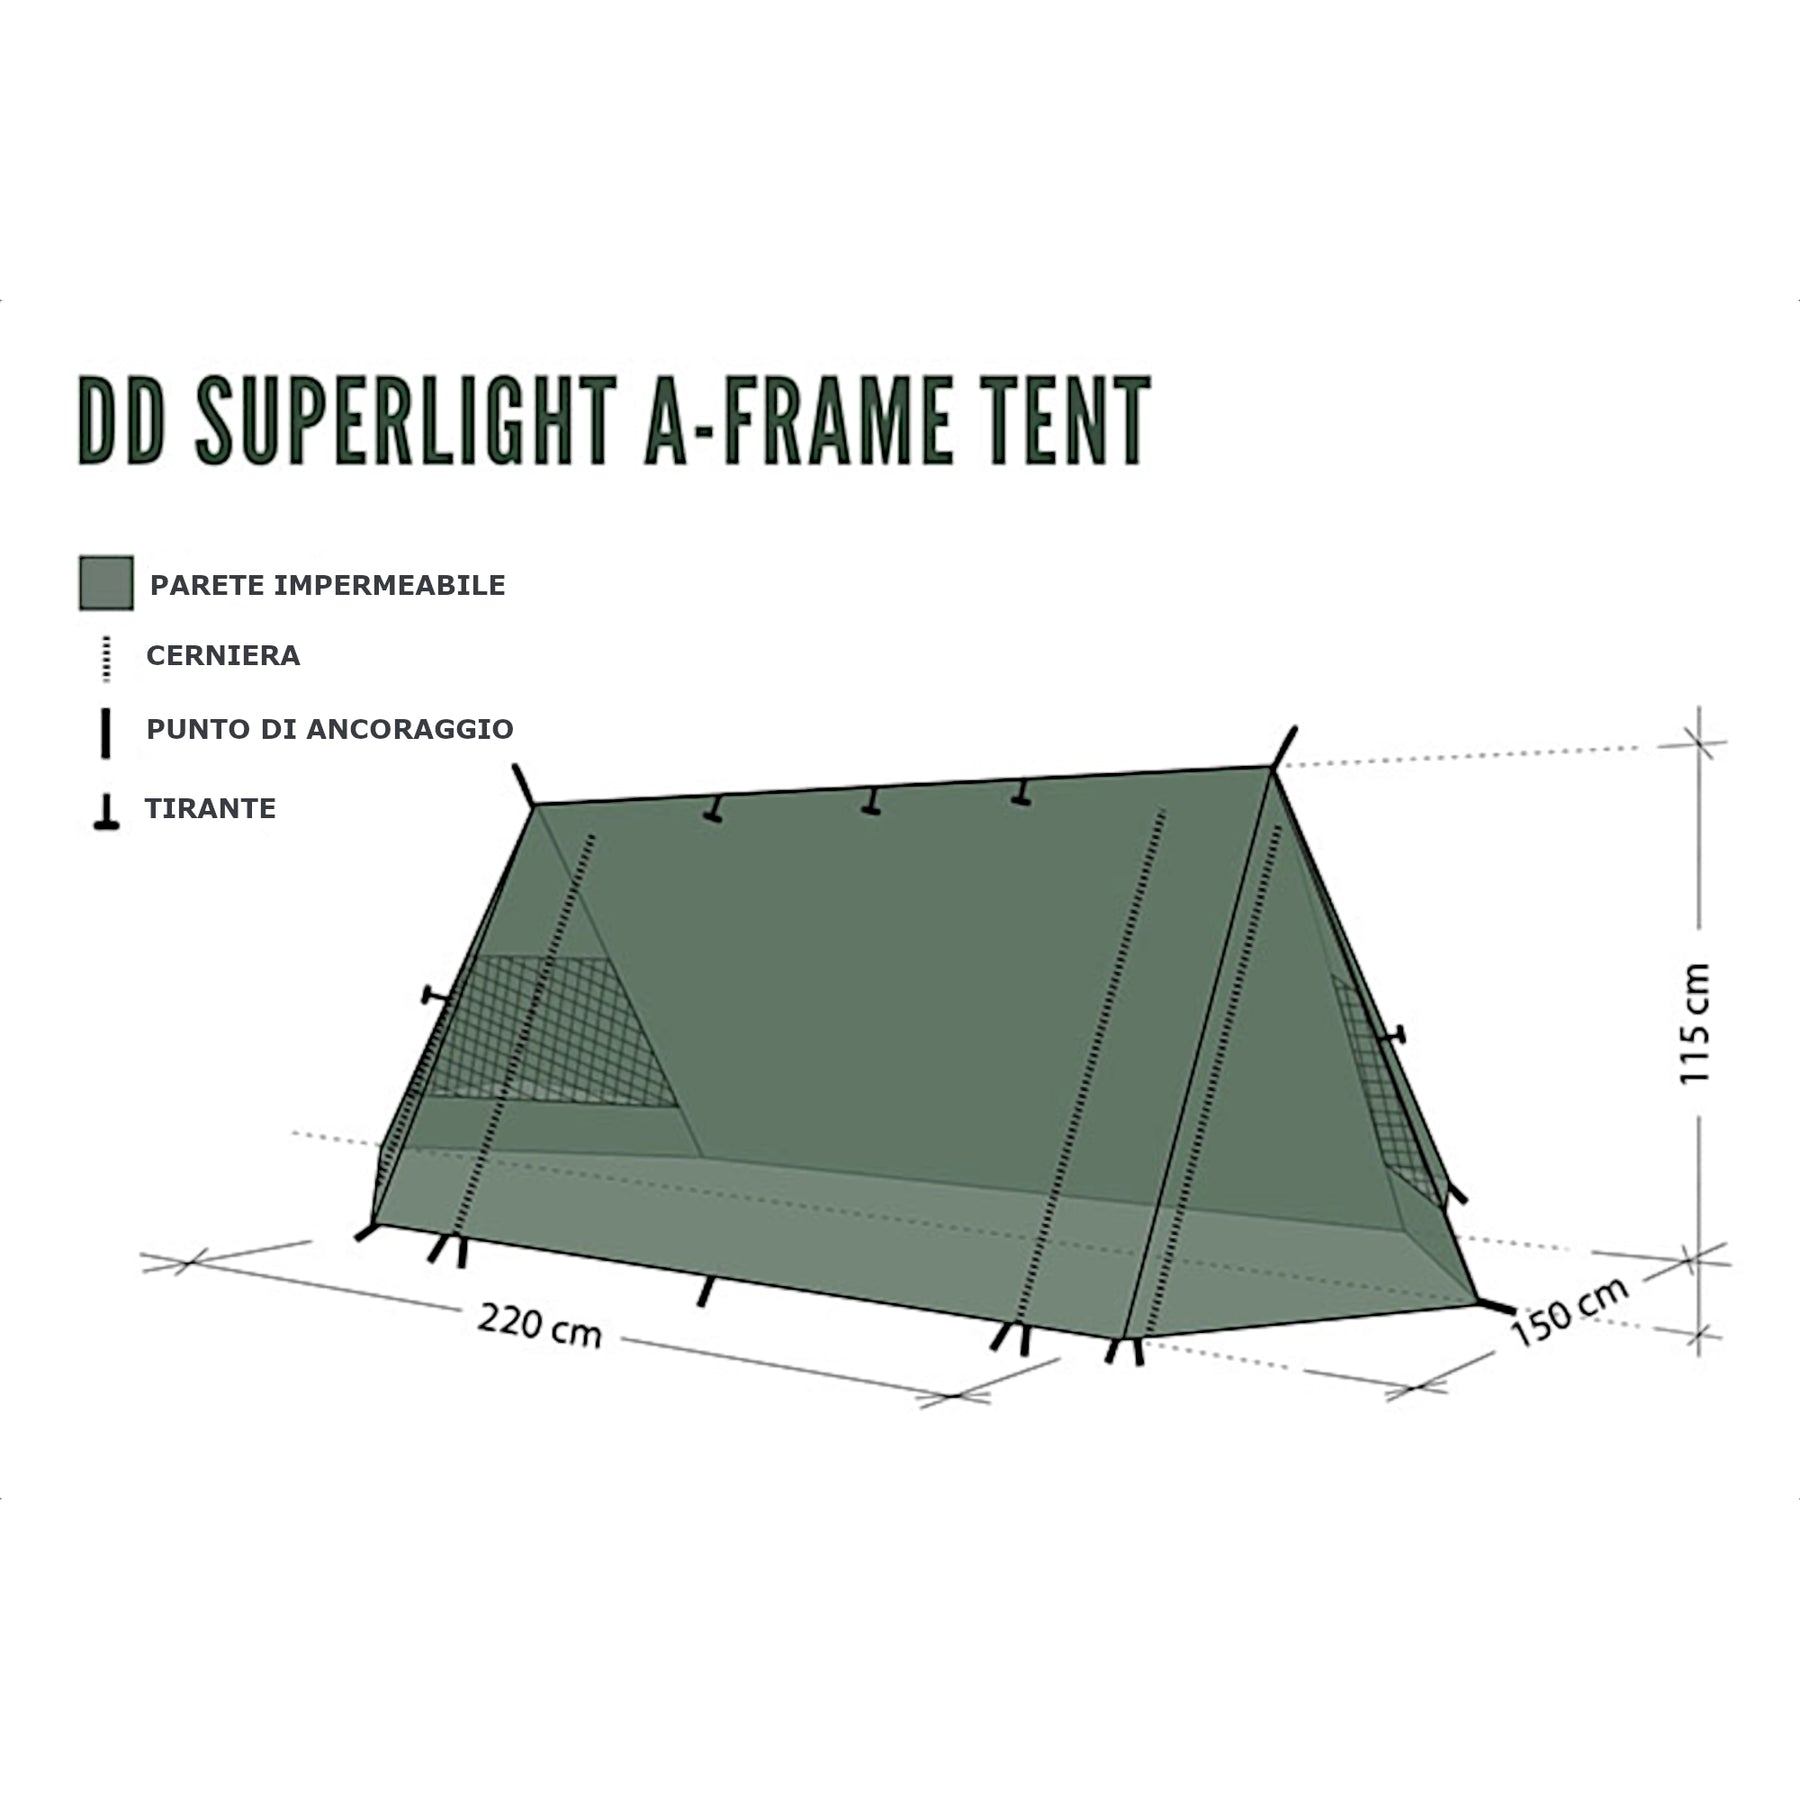 infografia dd a-frame tent 